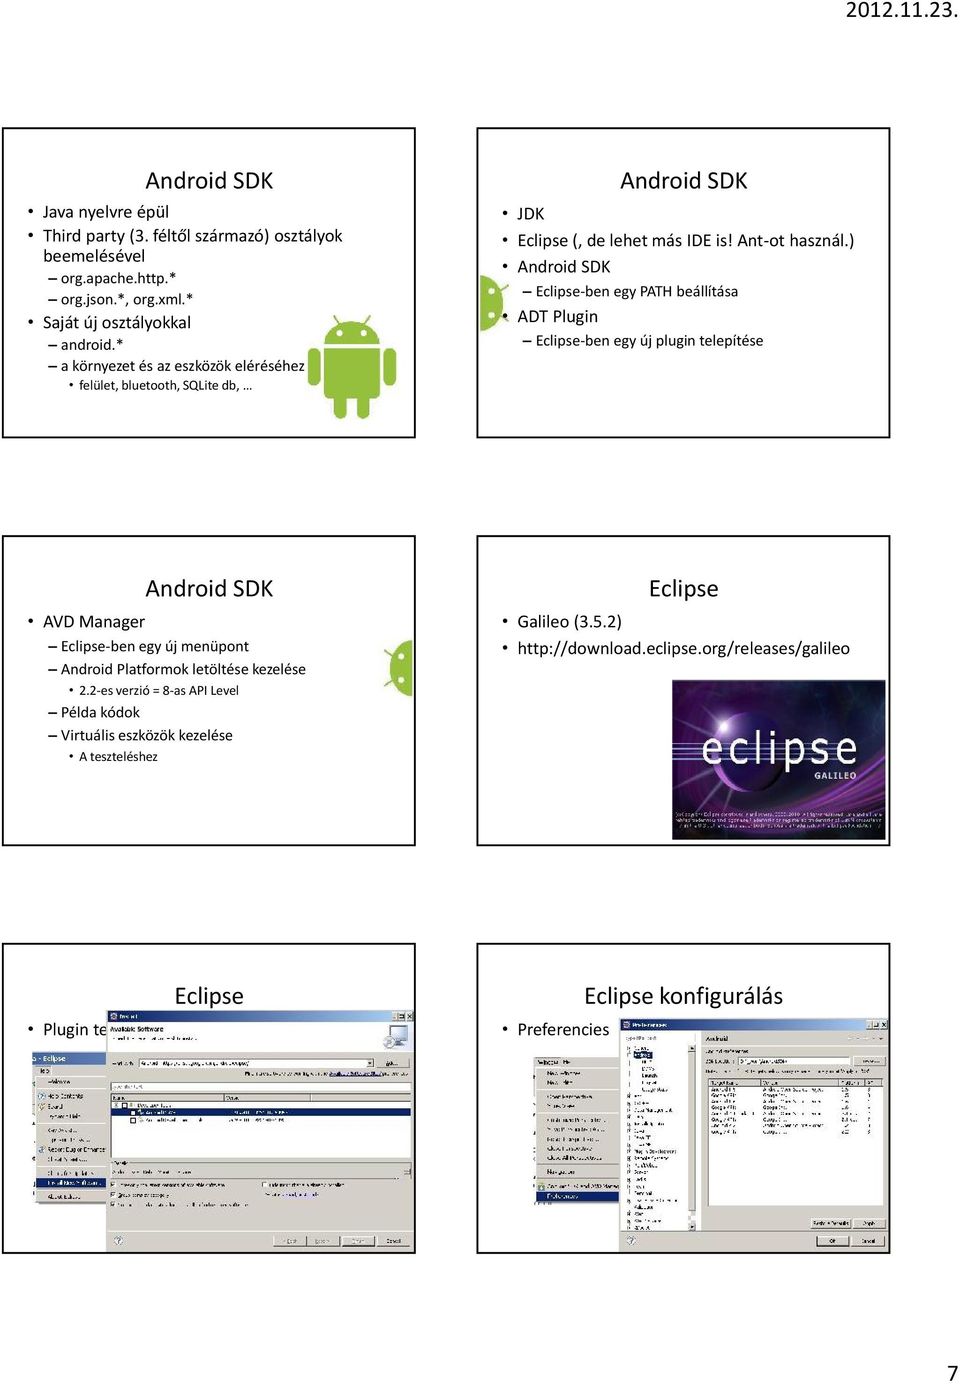 ) Android SDK Eclipse-ben egy PATH beállítása ADT Plugin Eclipse-ben egy új plugin telepítése Android SDK AVD Manager Eclipse-ben egy új menüpont Android Platformok